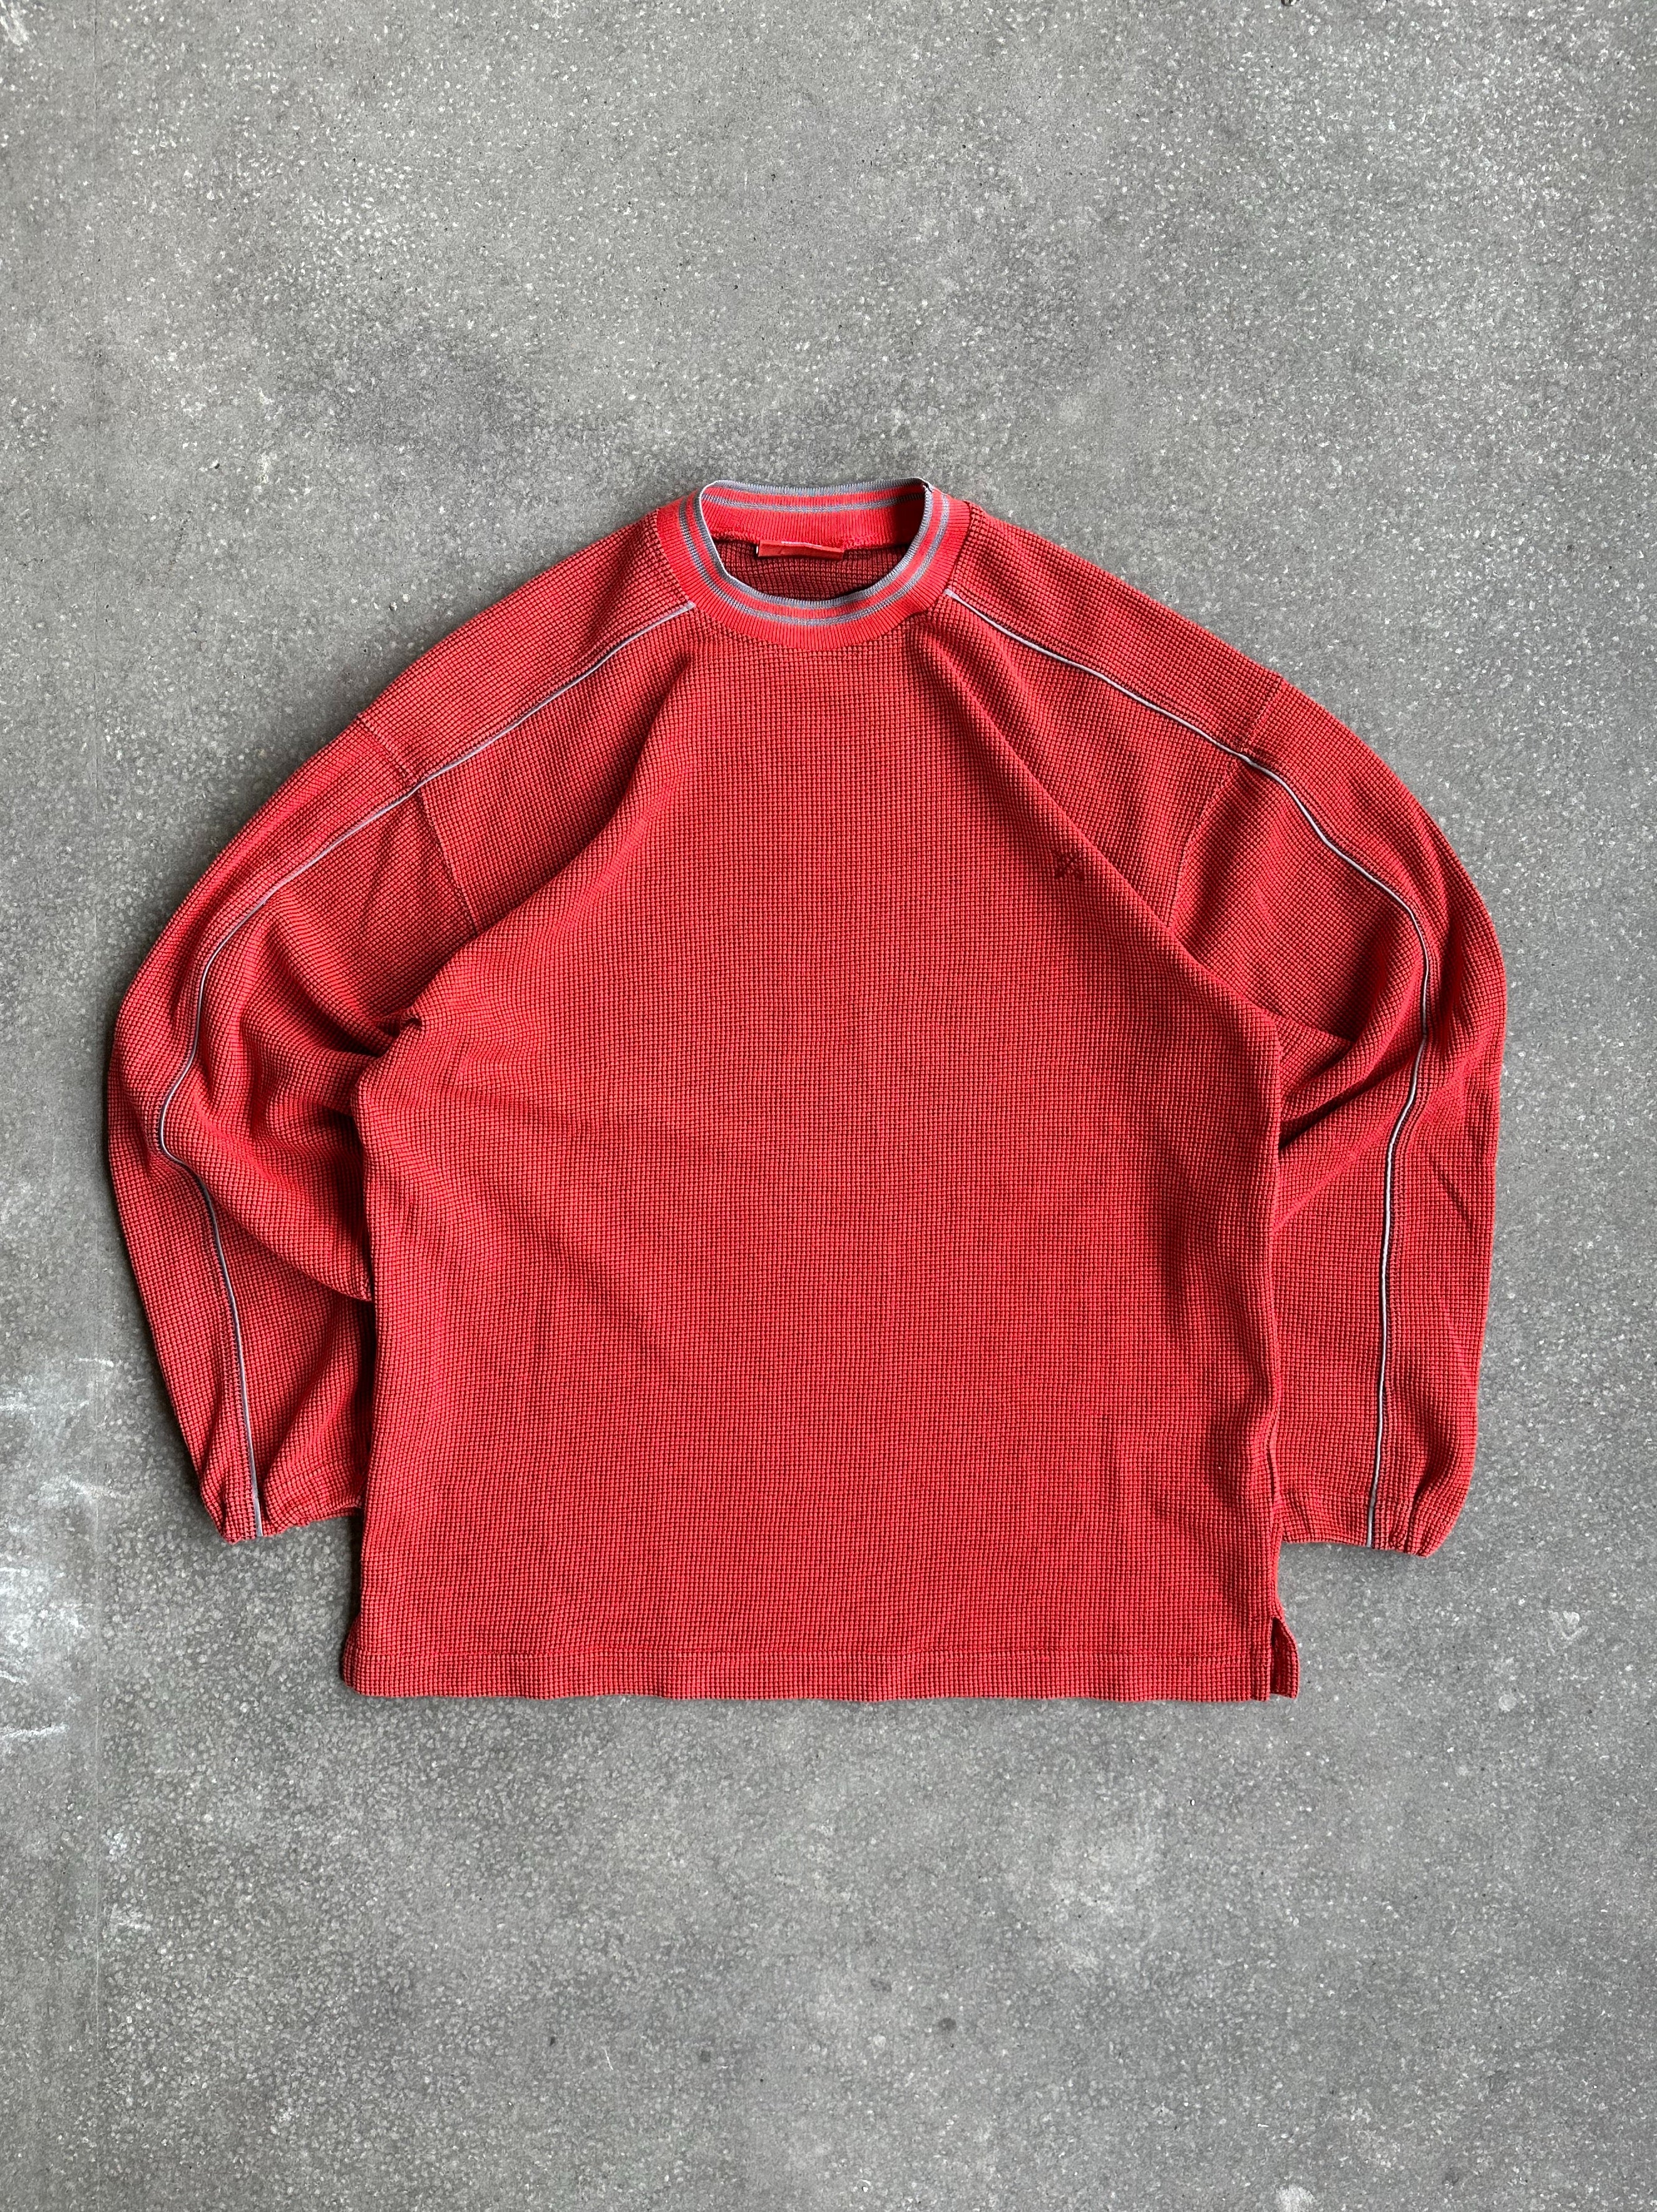 Vintage Oxbow Sweater - Medium